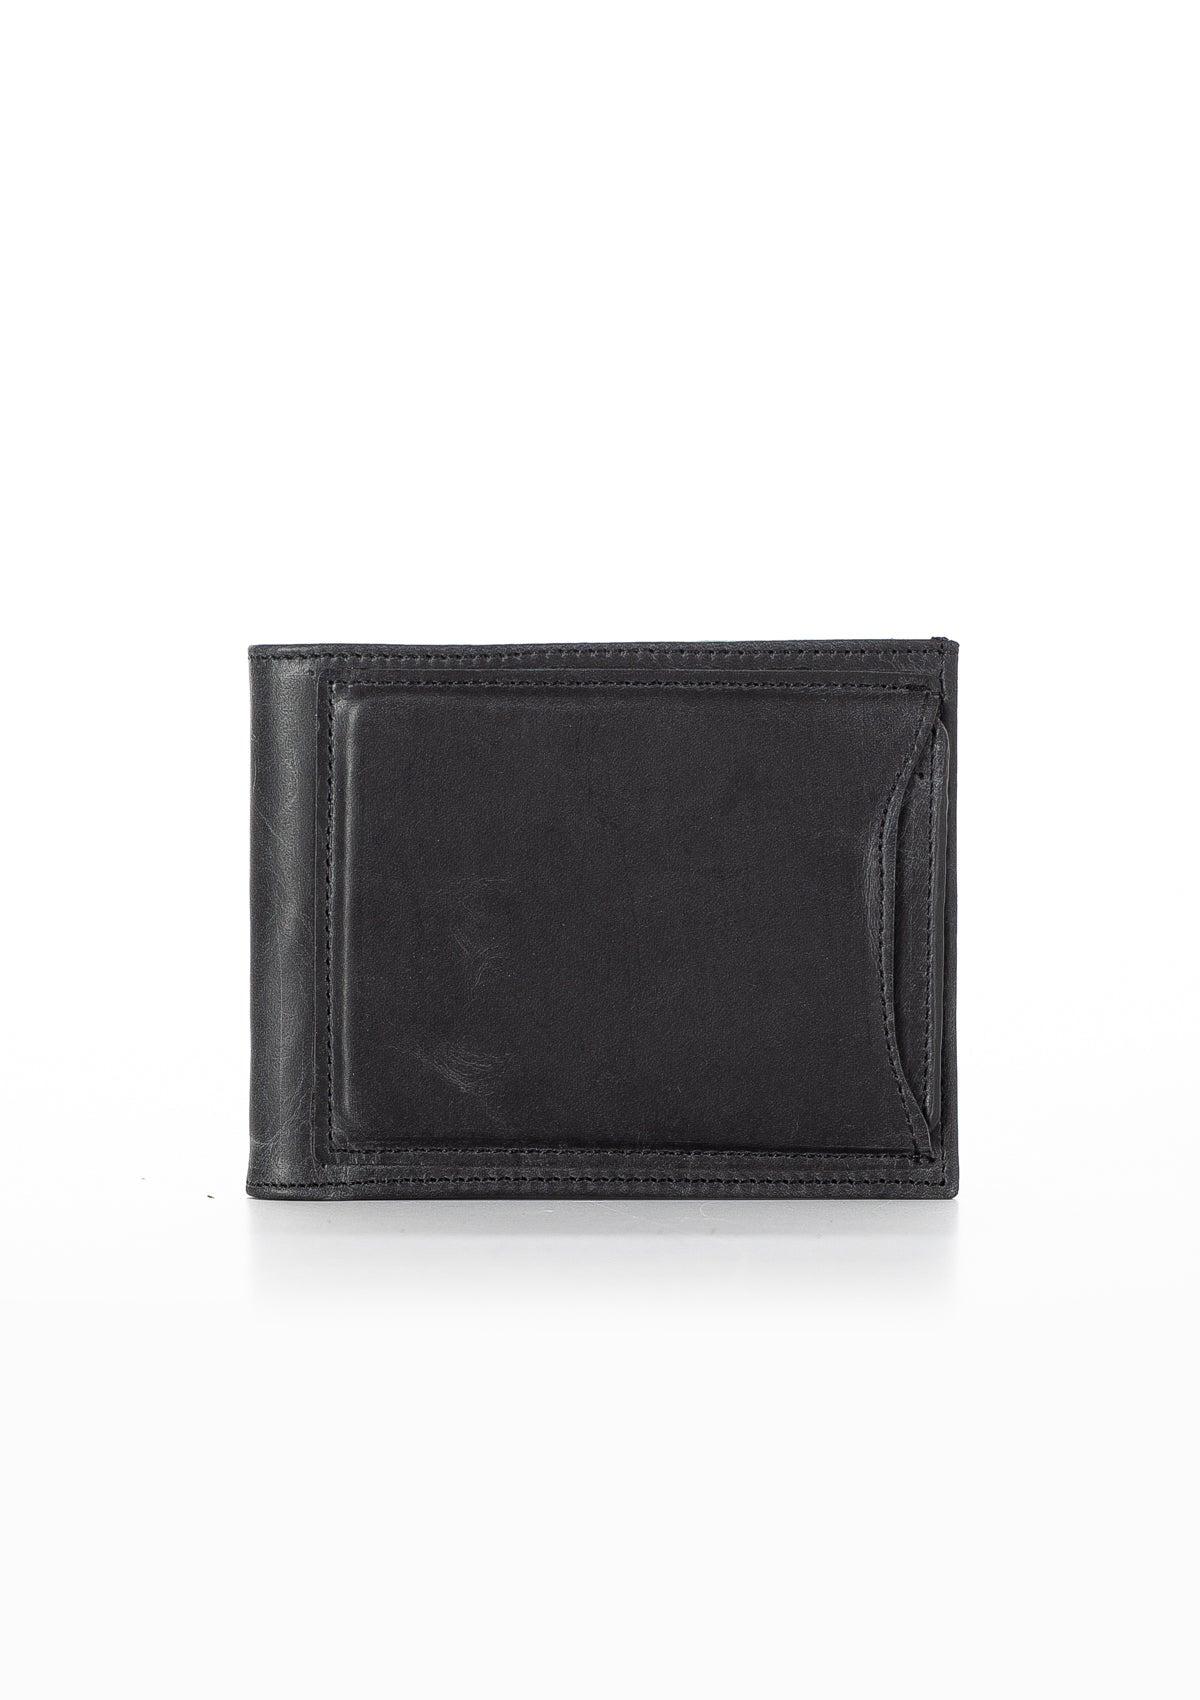 Visca Vintage Leather Wallet